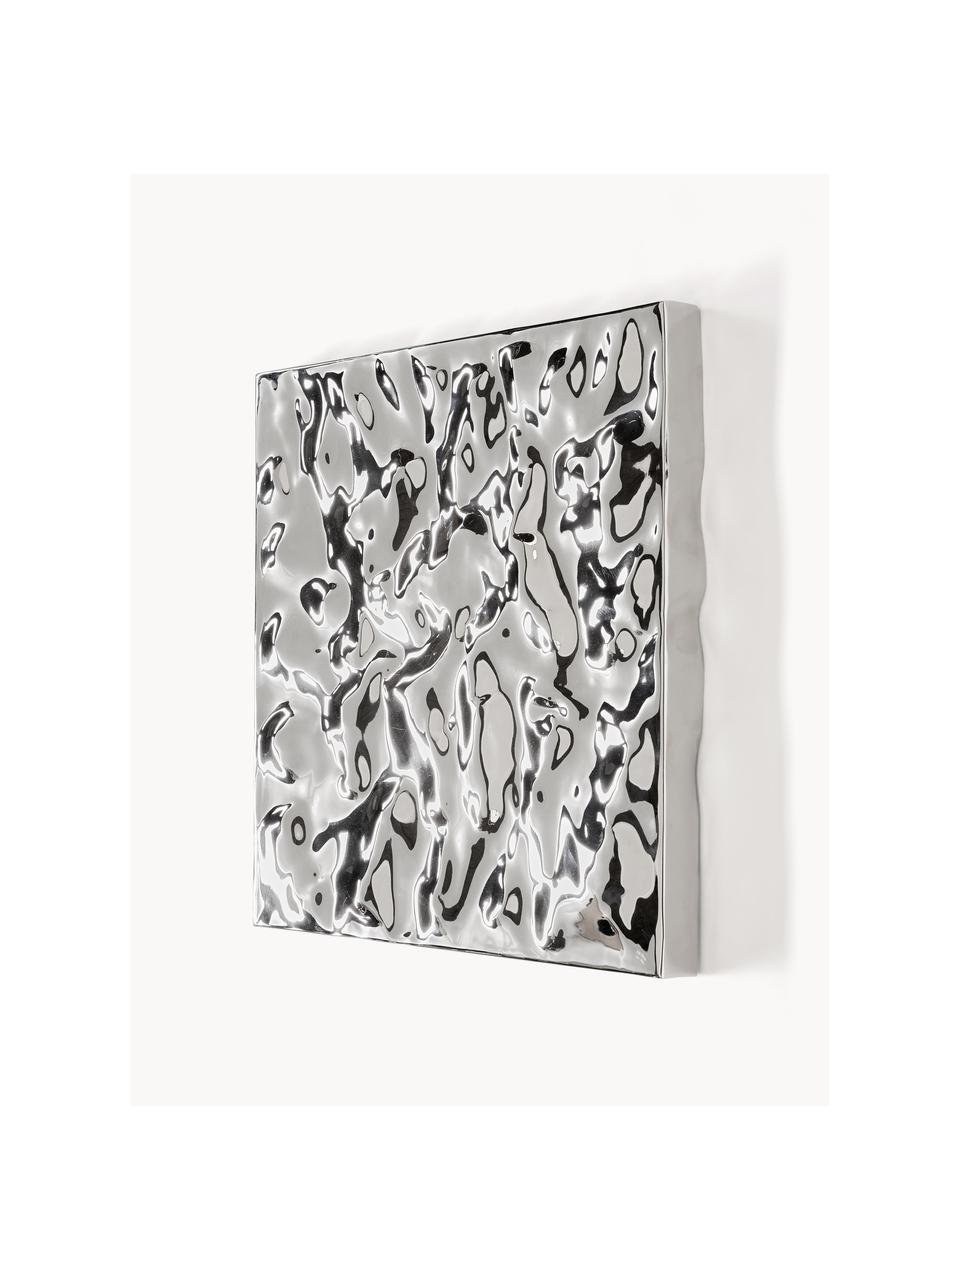 Wandobjekt Splash mit gehämmerter Oberfläche, 2 Stück, Aluminum, poliert, lackiert, Silberfarben, B 50 x H 50 cm